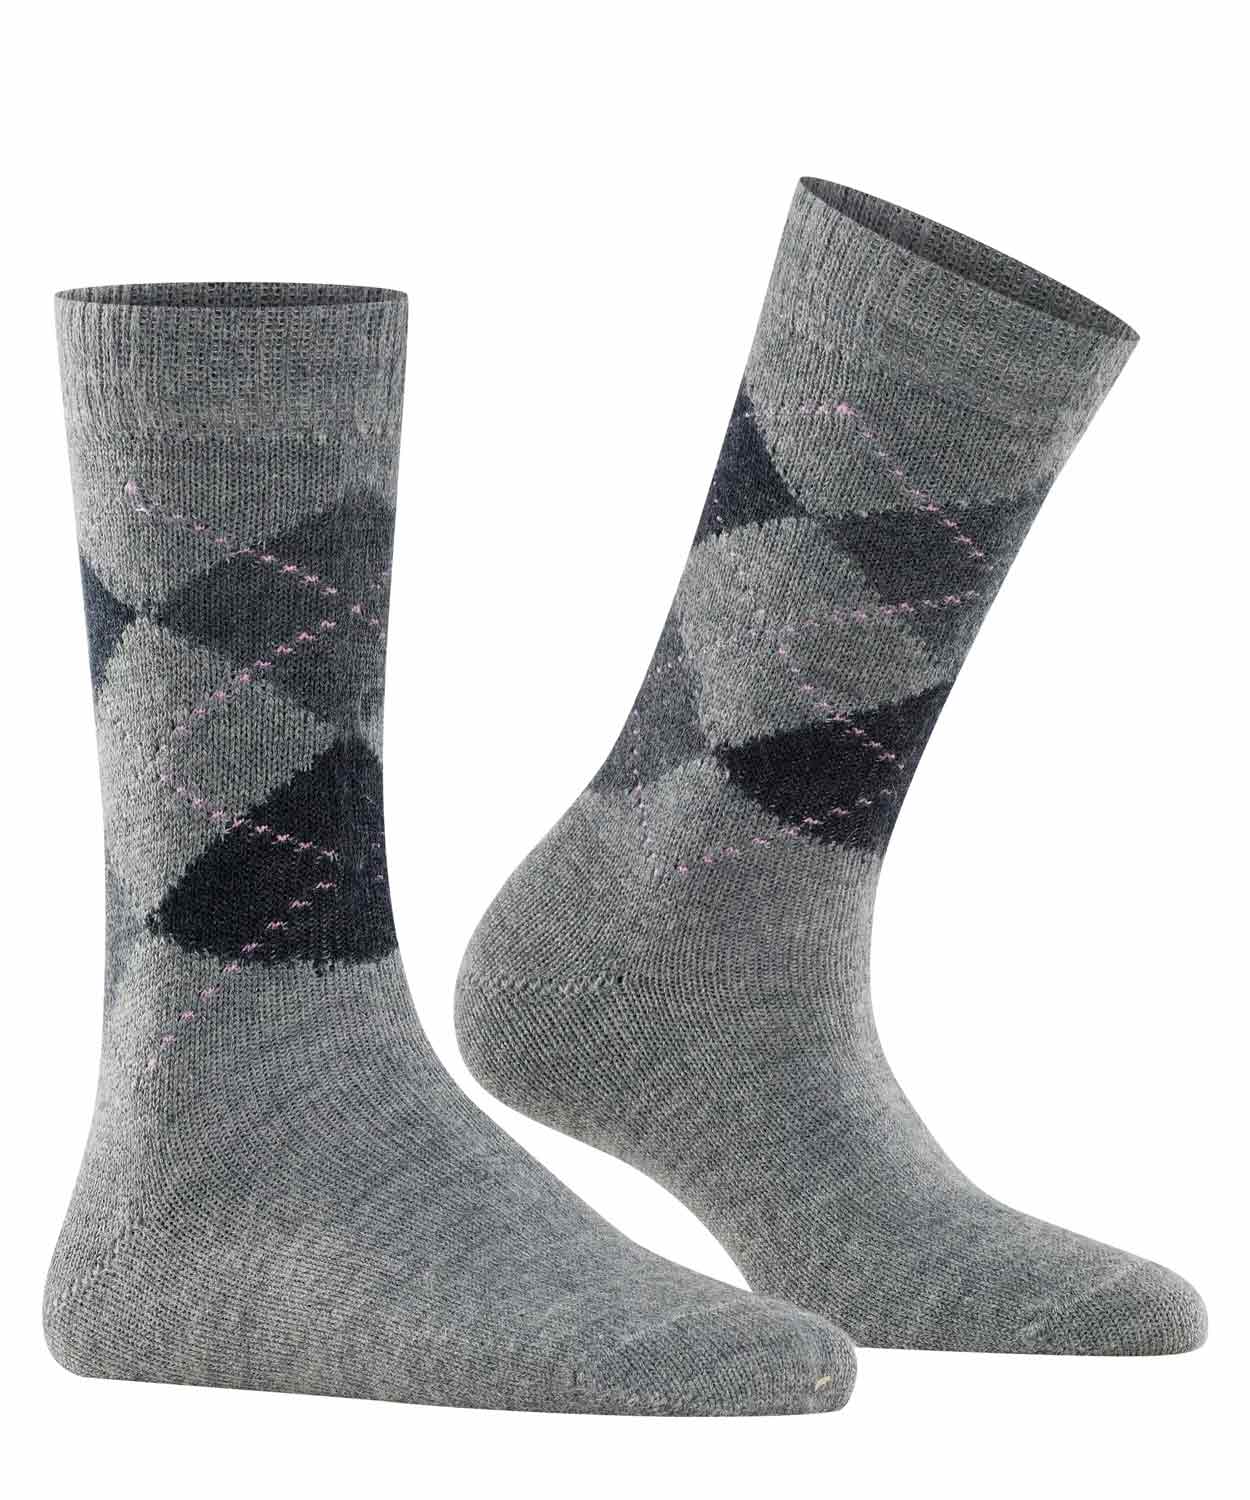 Socks - Whitby